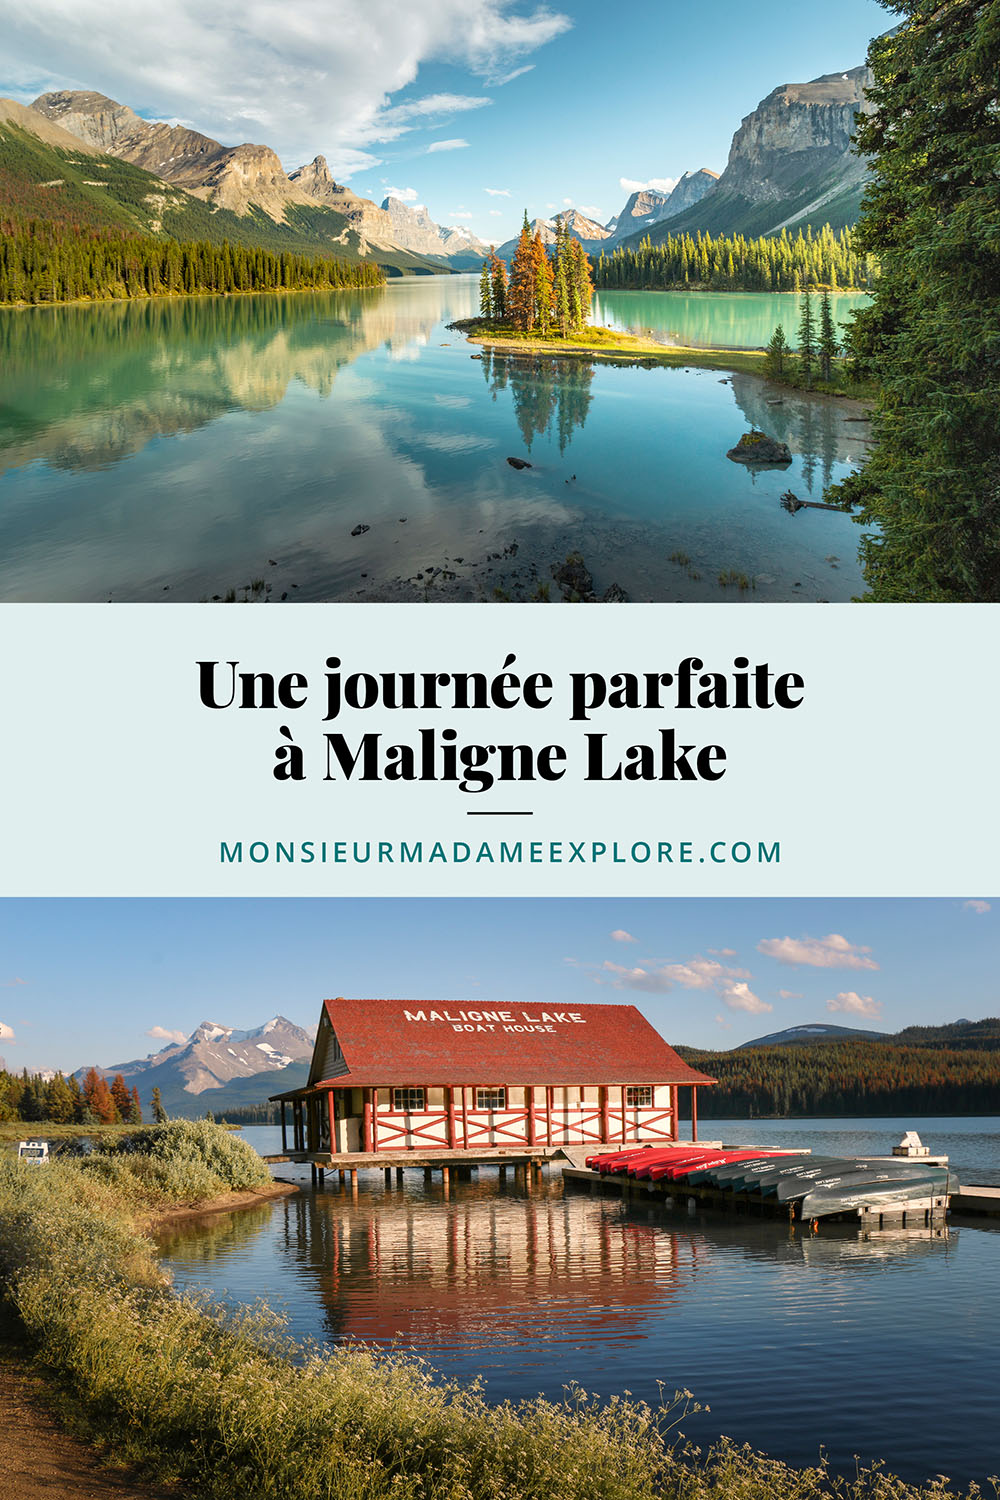 Une journée parfaite à Maligne Lake, Monsieur+Madame Explore, Blogue de voyage, Spirit Island, Rocheuses canadiennes, Jasper, Alberta, Canada / Visiting Maligne Lake, Spirit Island, Canadian Rockies, Jasper, Alberta, Canada